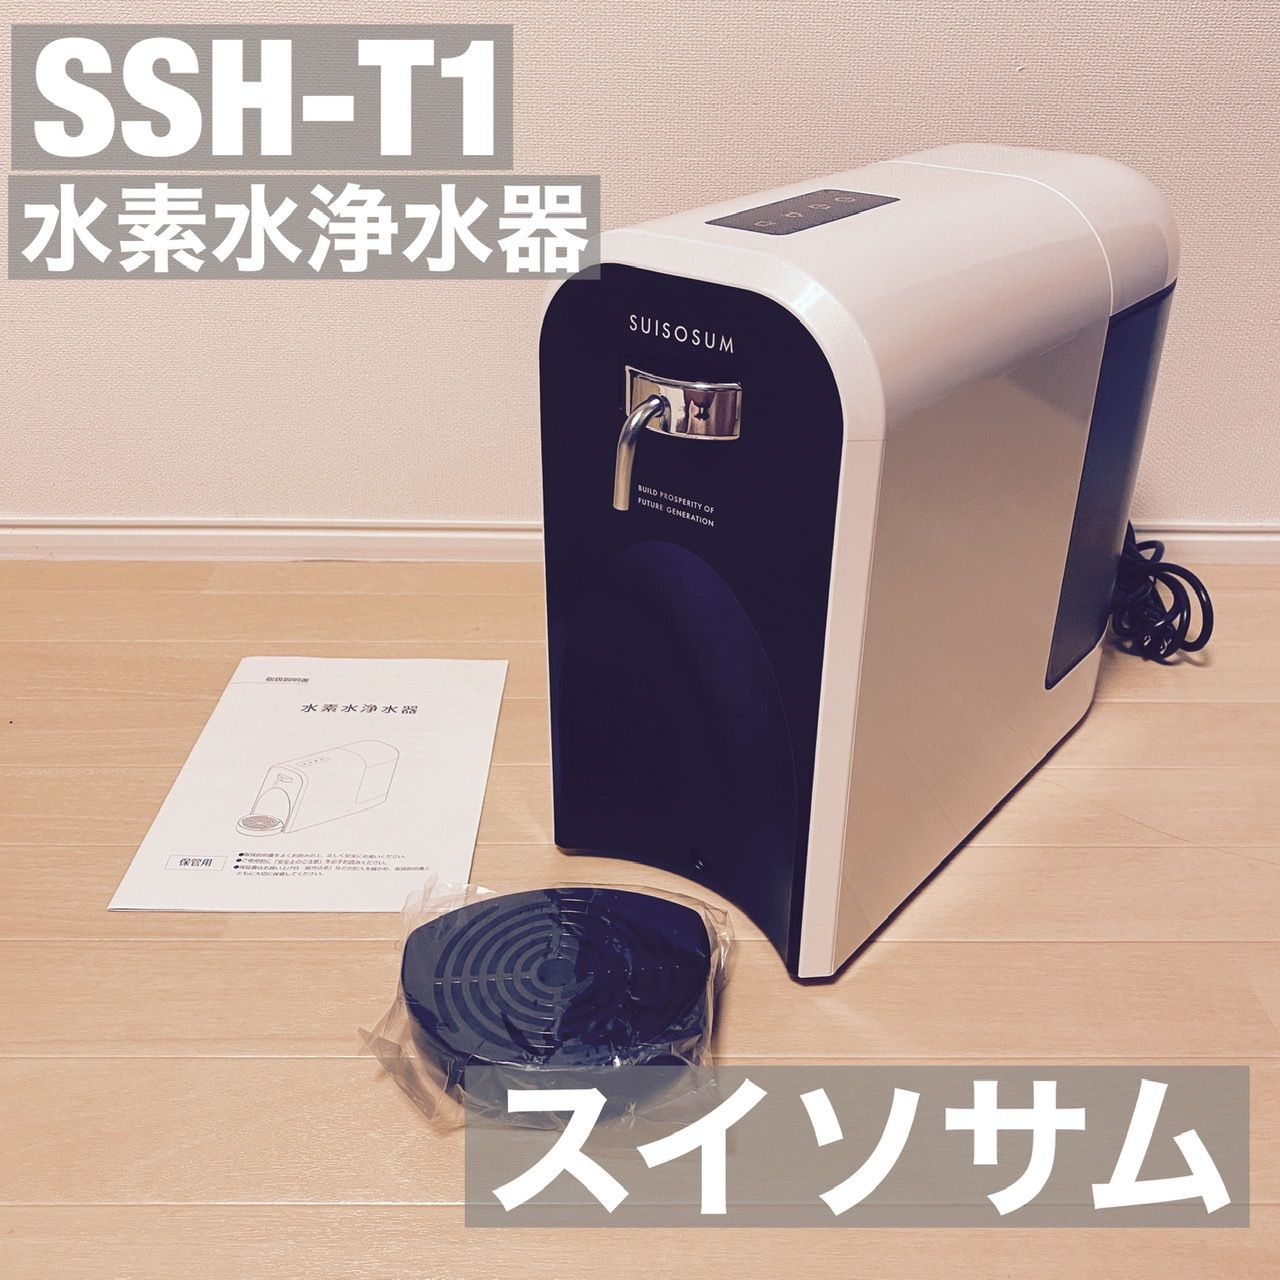 水素水浄水器SSH-T１スイソサム（水素入浴剤2袋おまけ付き）、取説、外箱有り美容